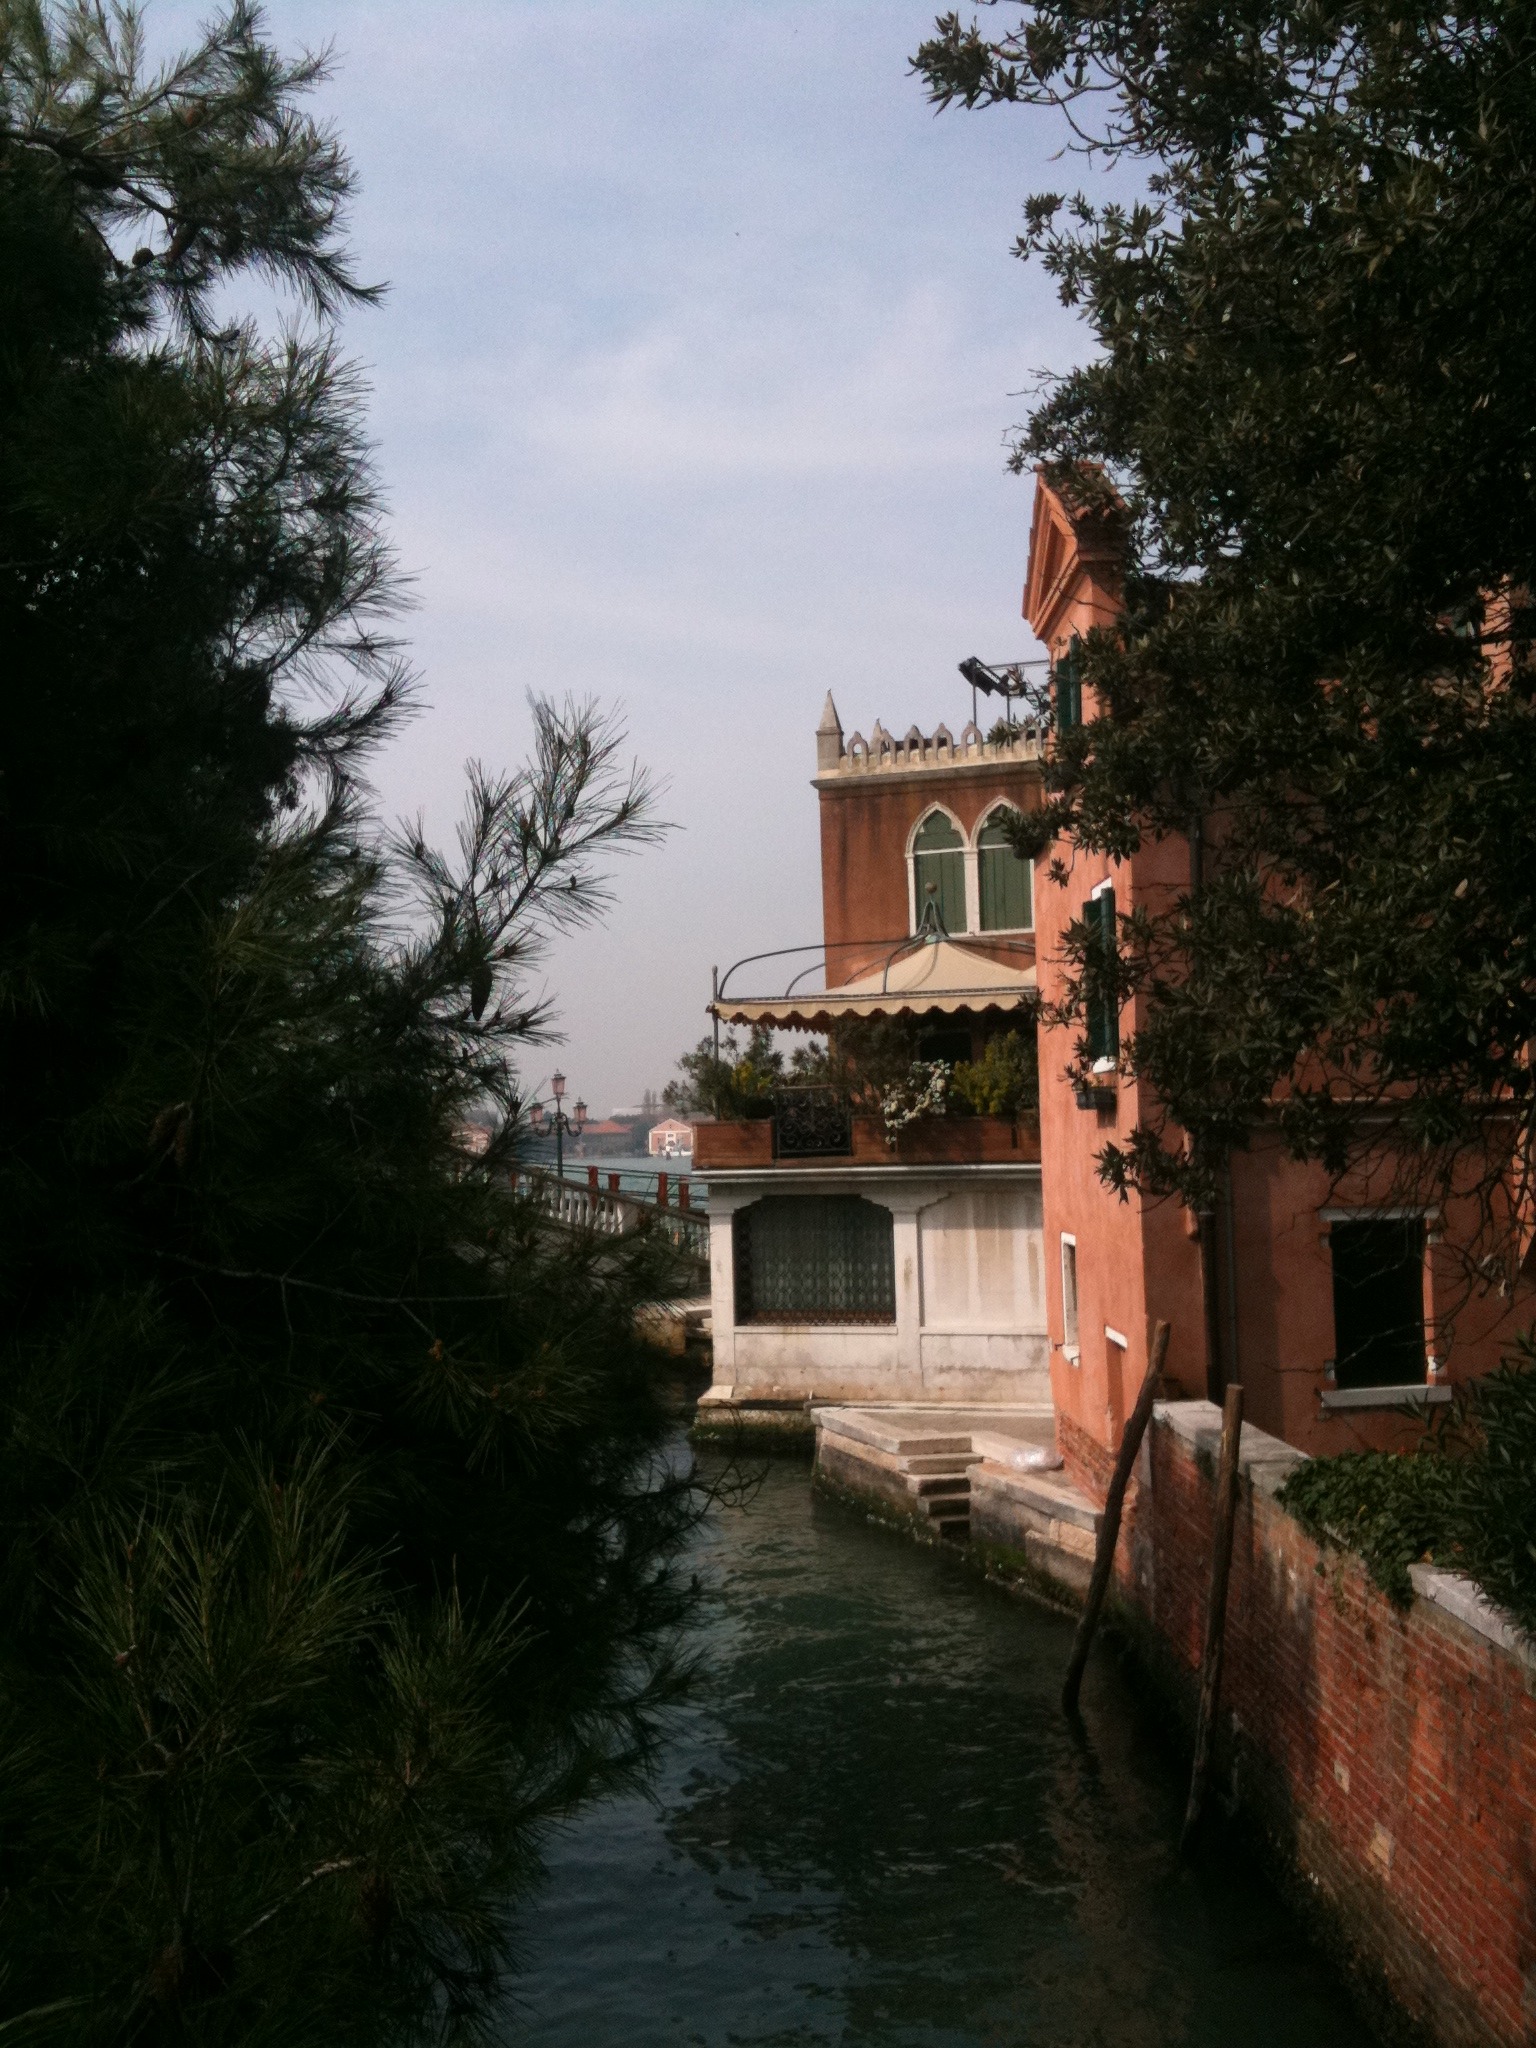 Venice - Mobile Photos - Day 6